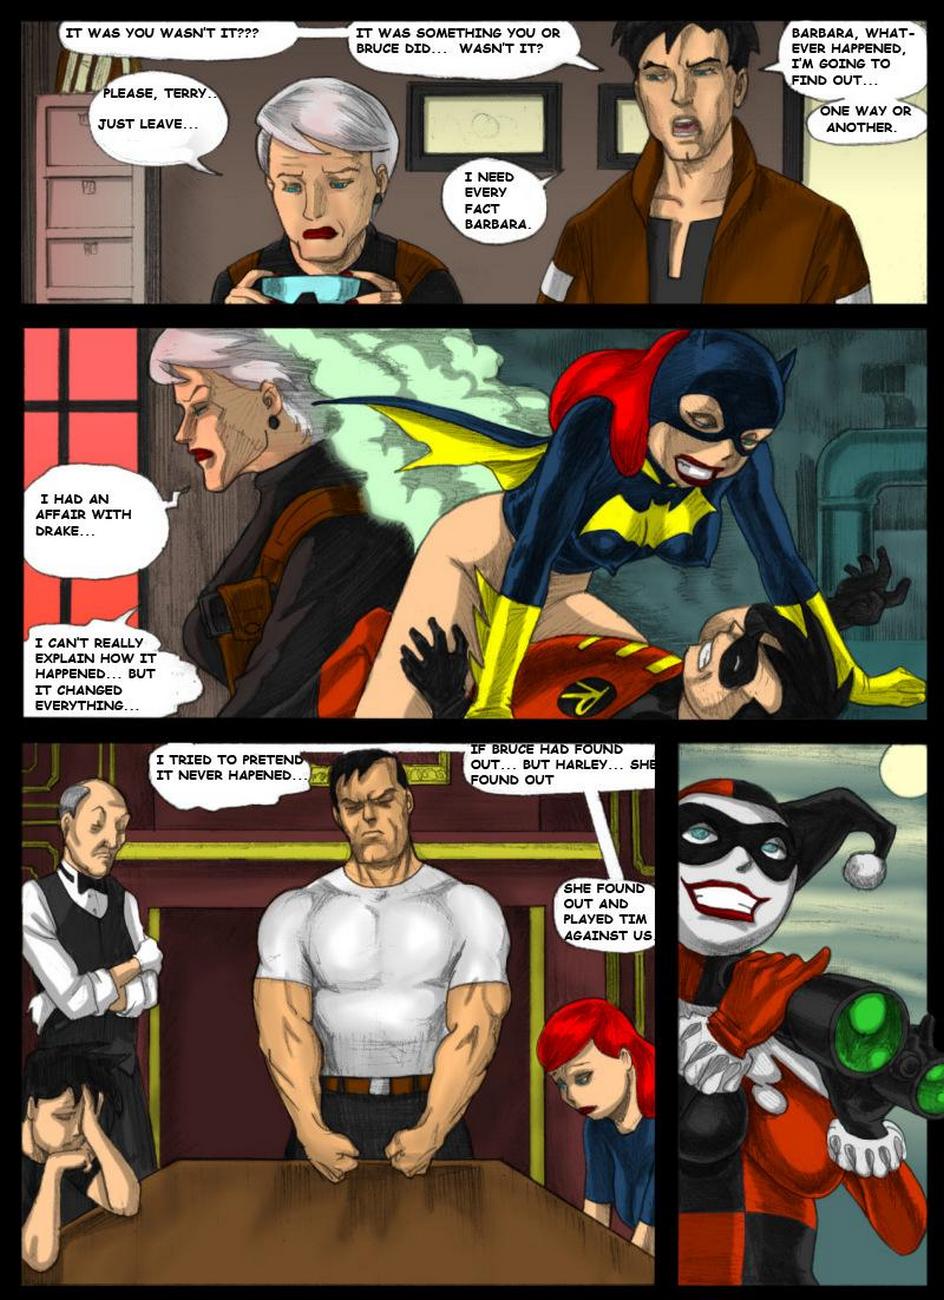 Batman Beyond - Forbidden Affairs 1